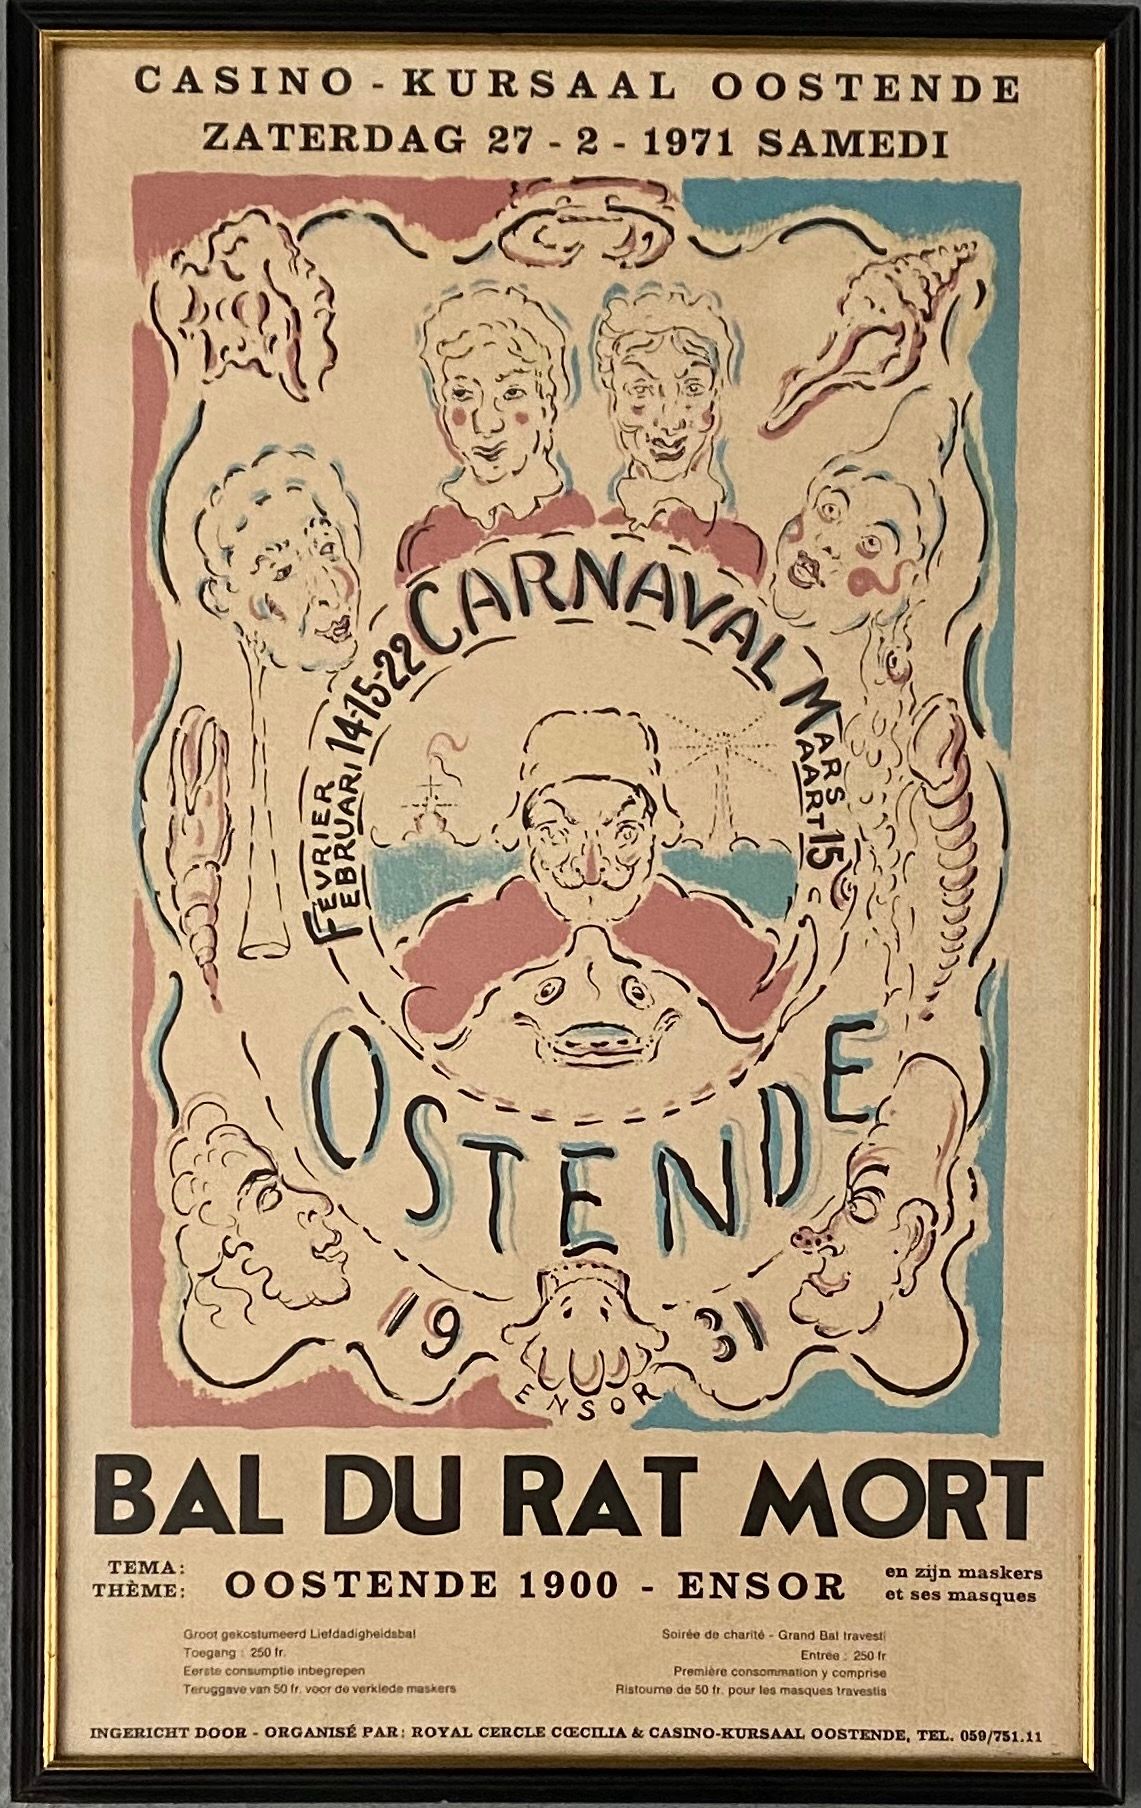 ENSOR J 
Poster per la mostra "Bal du rat mort". 55,5 x 34 cm.